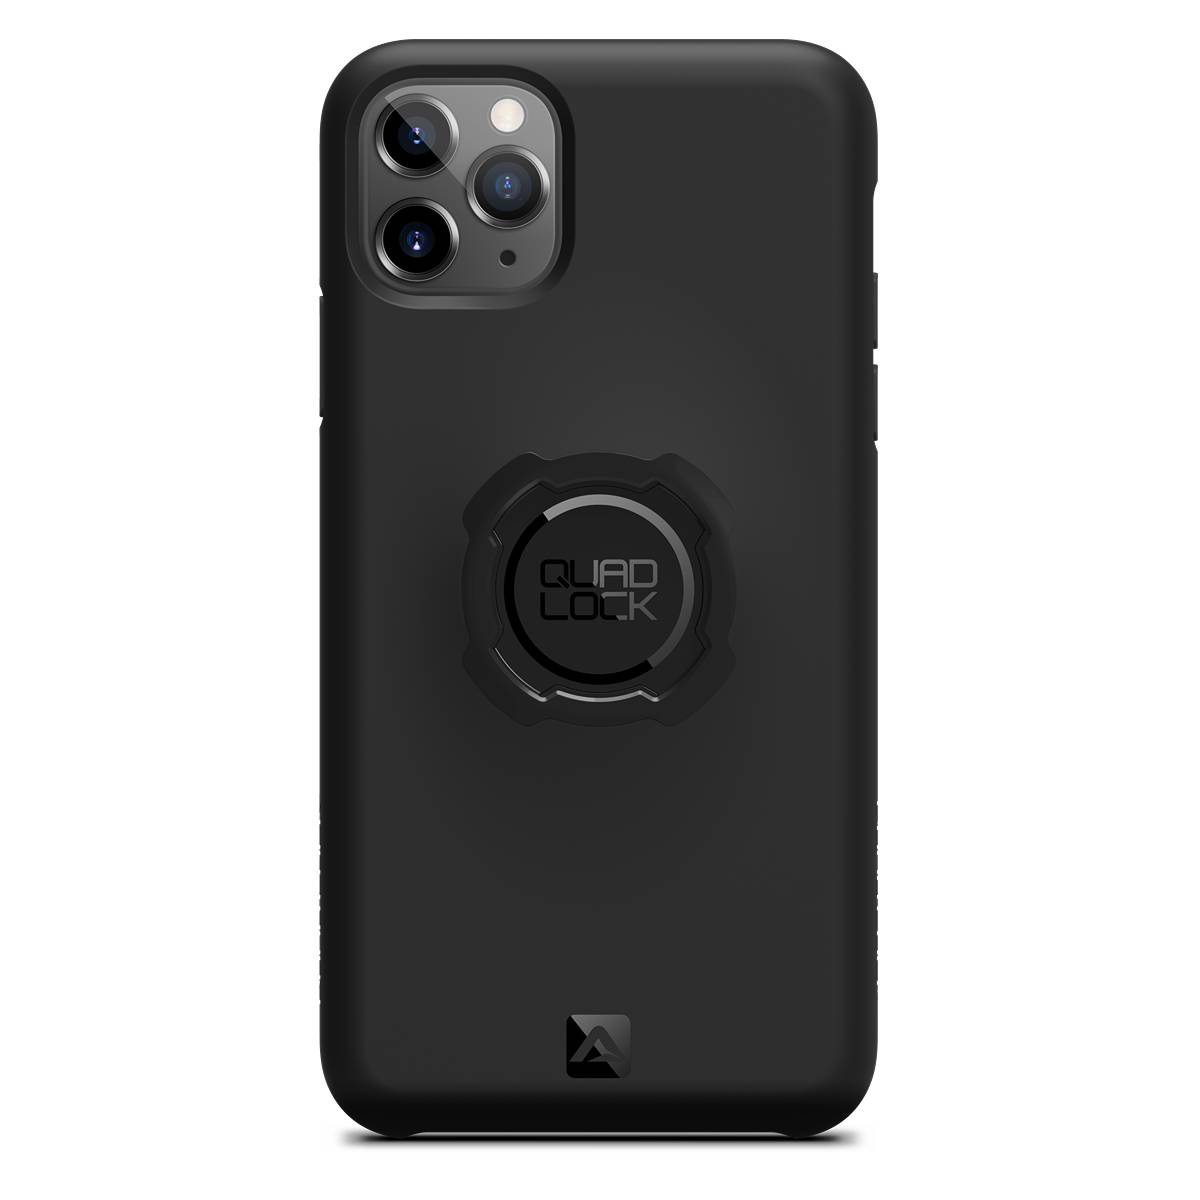 Quad Lock Case Iphone 11 Pro Max Size